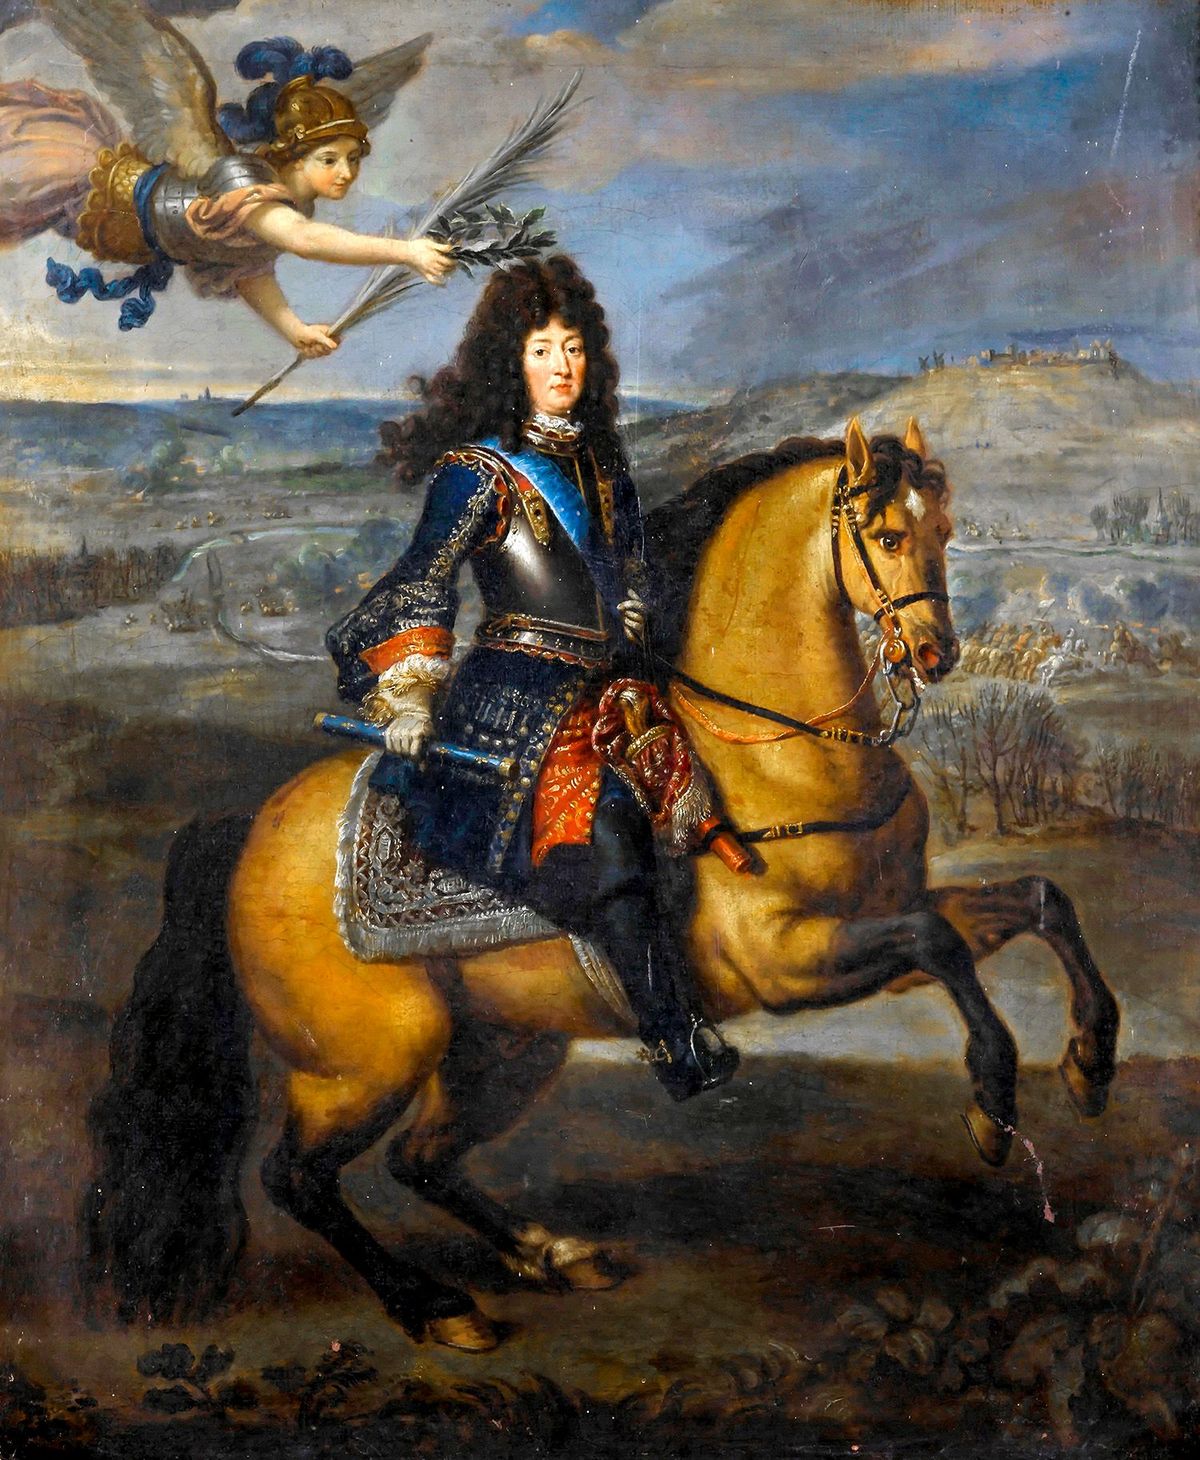 Ruim behaard De Franse koning Lodewijk XIV wordt gekroond door Victoria als gevolg van zijn overwinning op Maastricht in 1673 Omdat hij vanaf zijn 17de kaal werd droeg hij lange krullende pruiken Het werd de nieuwe grote mode